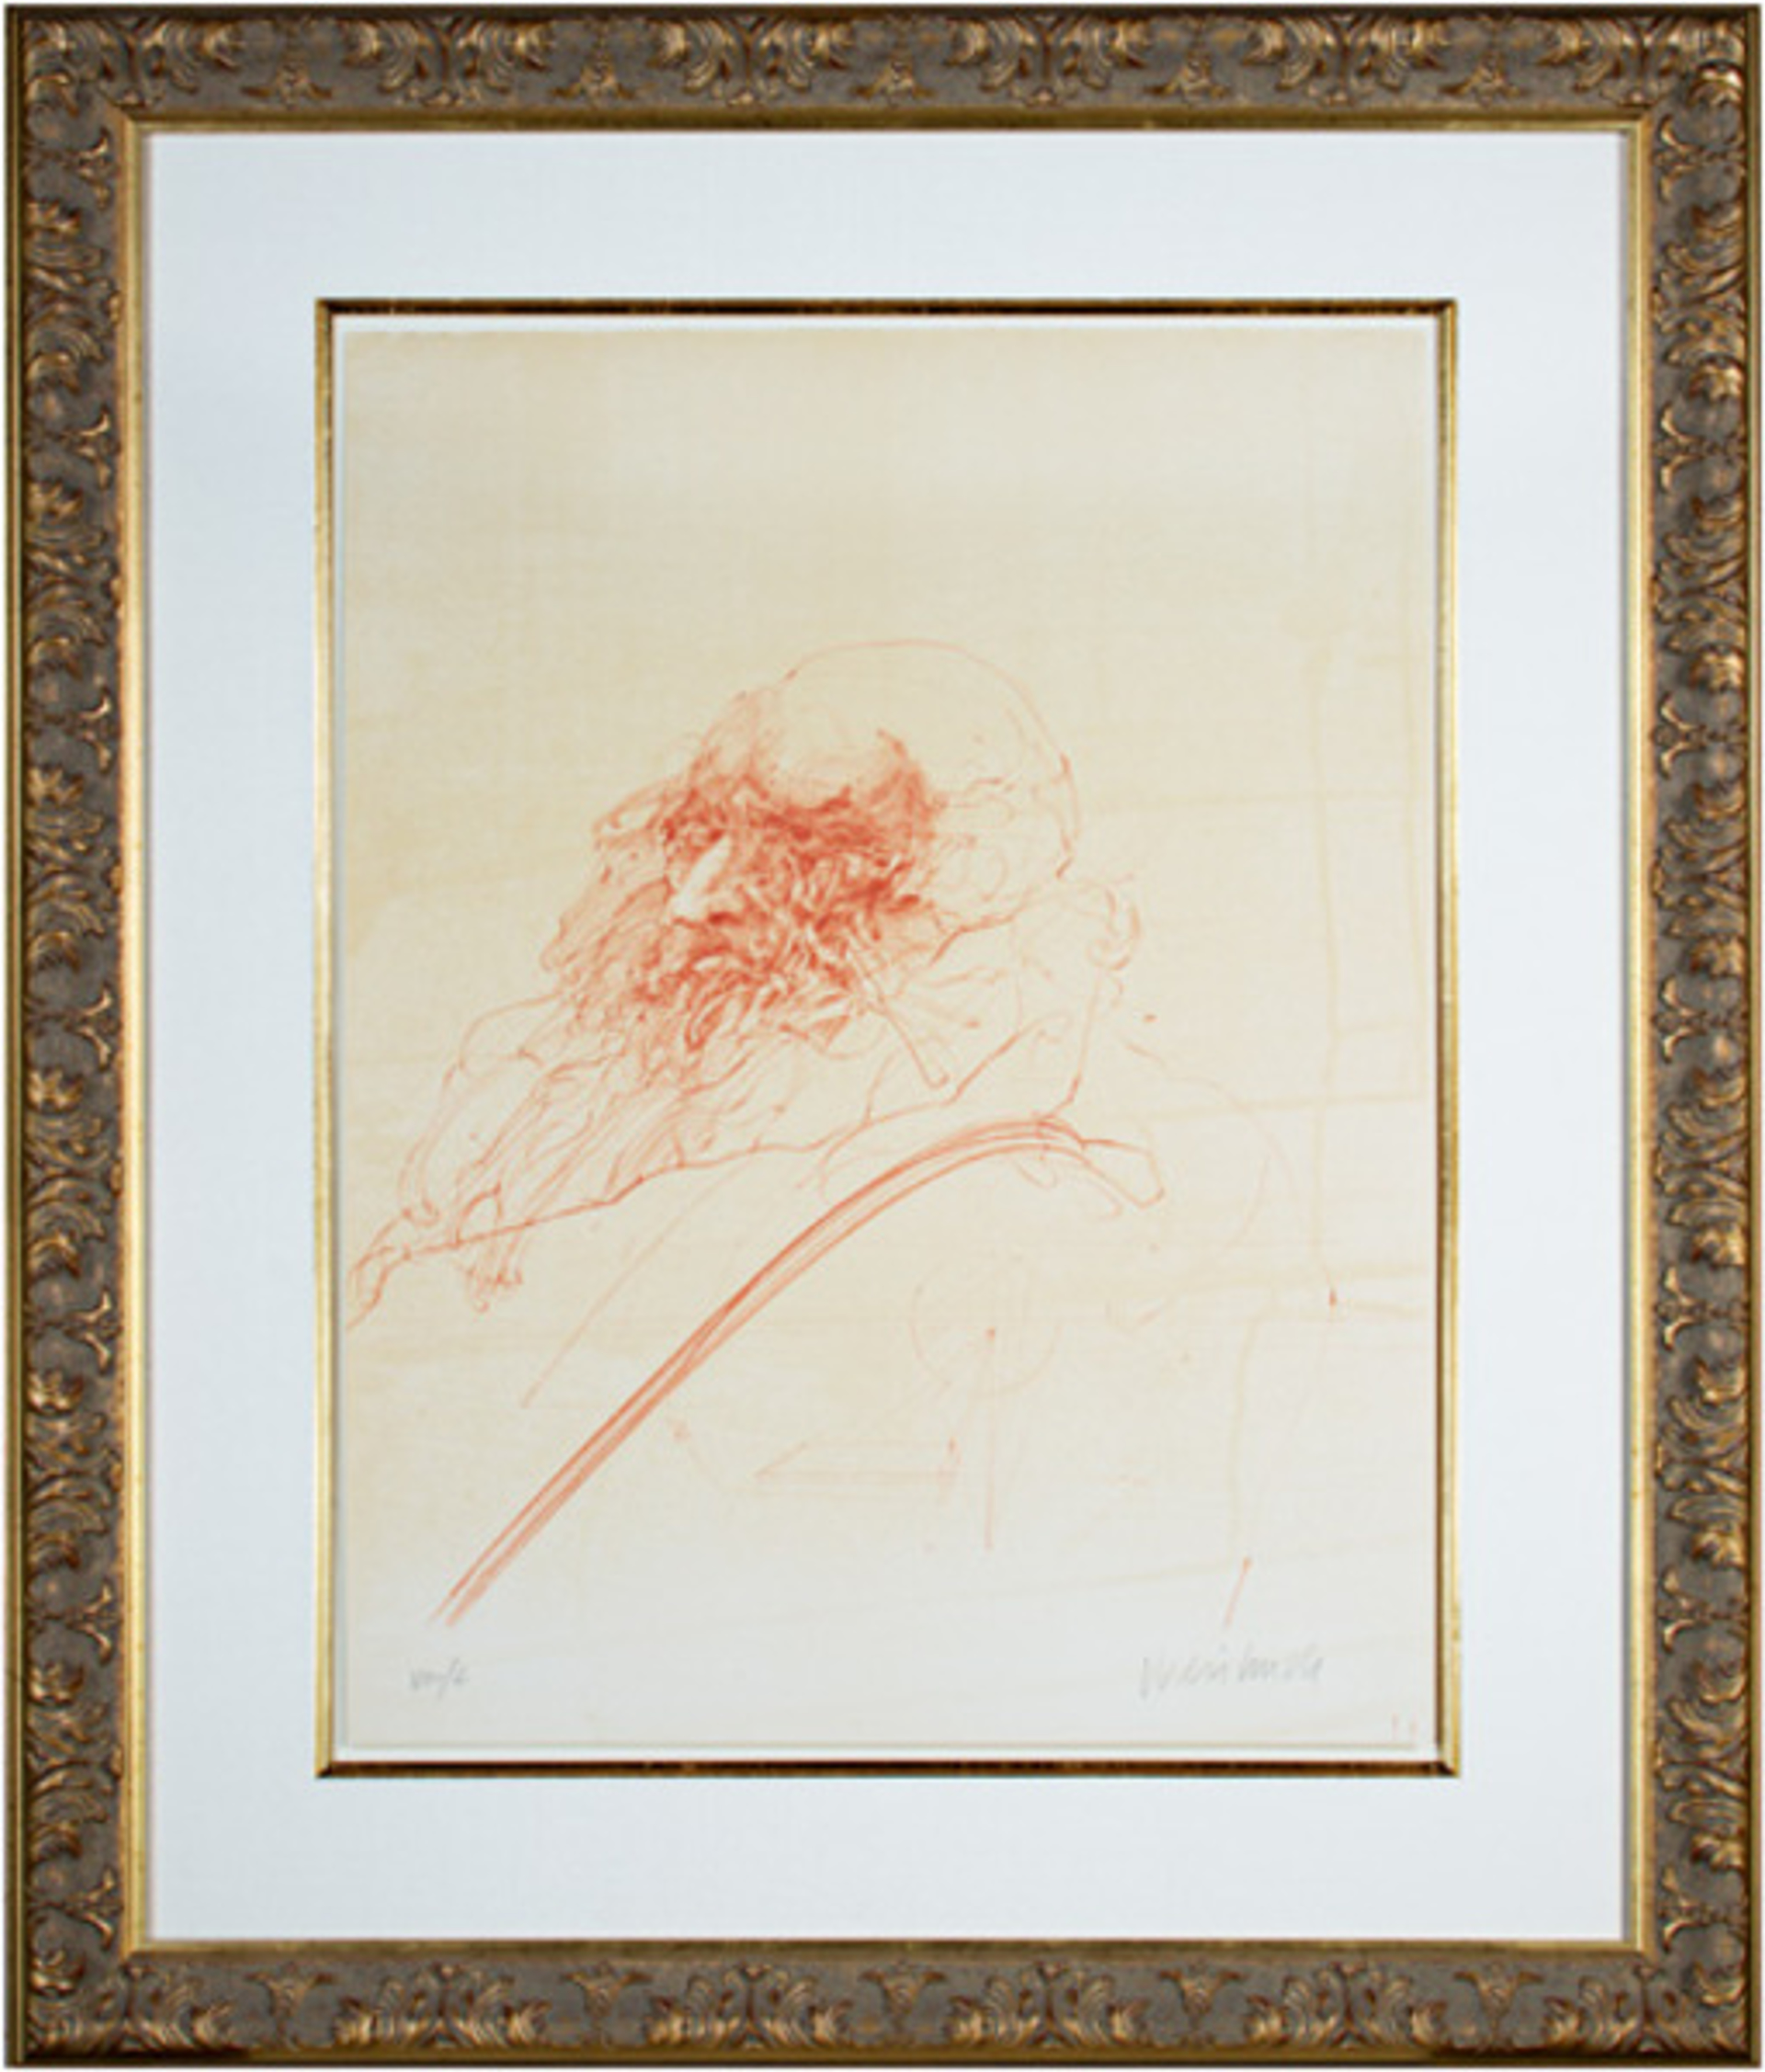 Homage a Leonardo d'Vinci (Self-Portrait from De La Bataille Vol. I) by Claude Weisbuch